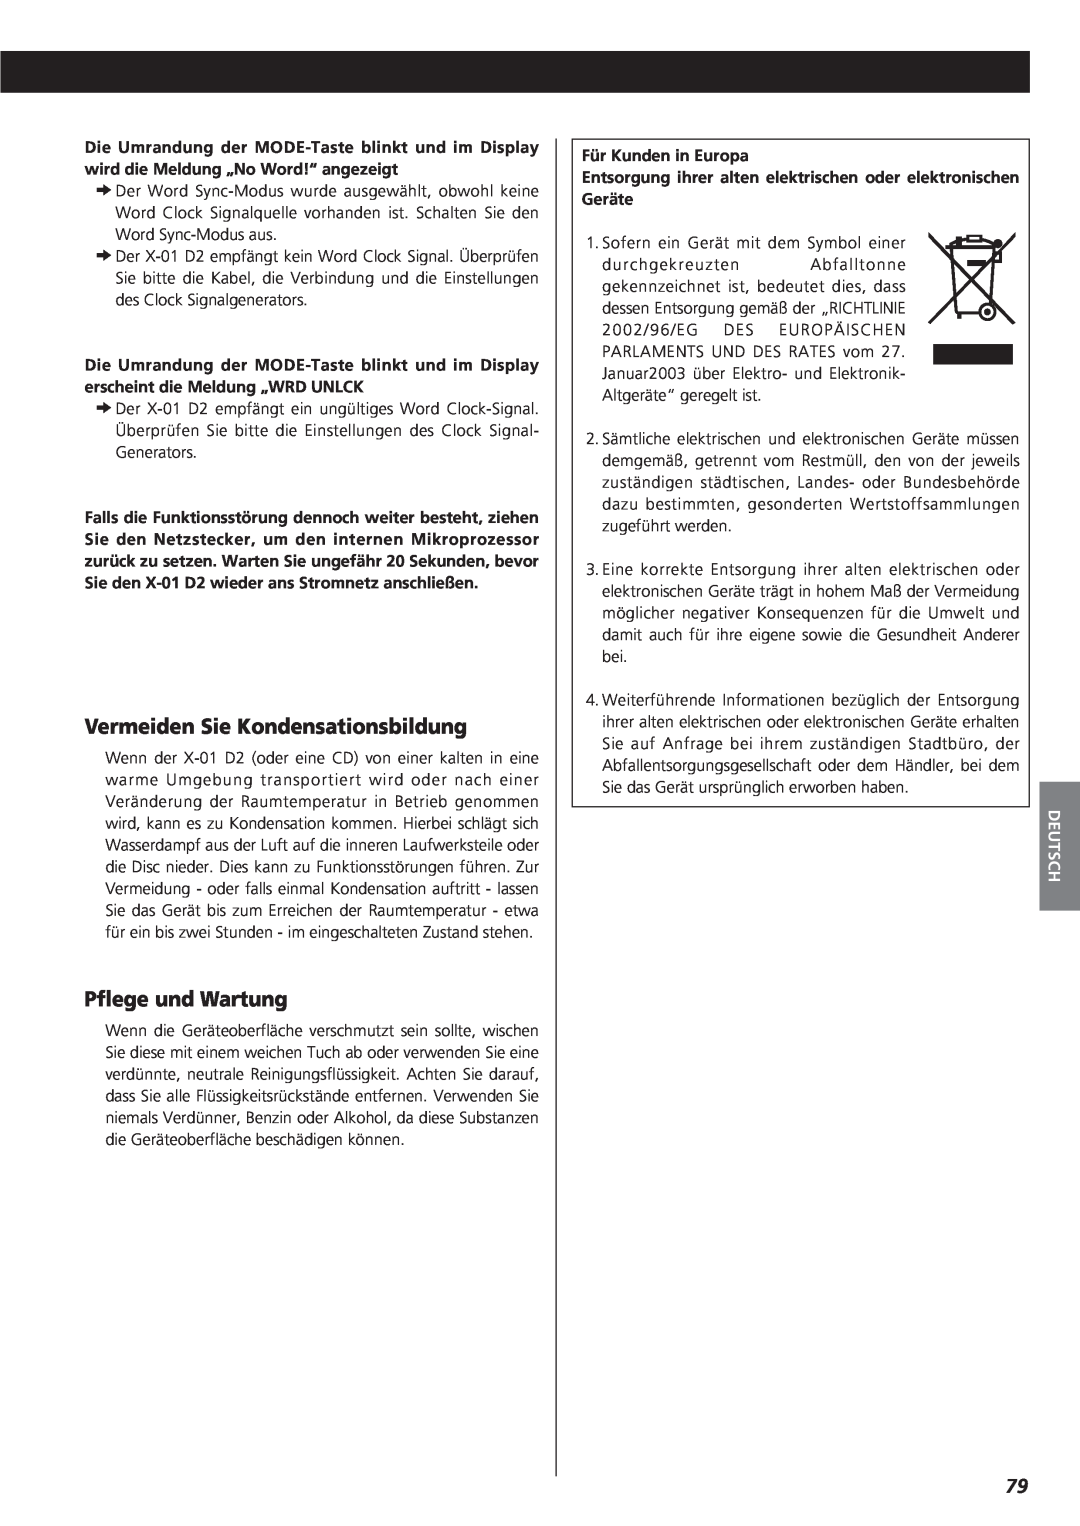 Teac X-01 D2 owner manual Vermeiden Sie Kondensationsbildung, Pflege und Wartung, Deutsch 